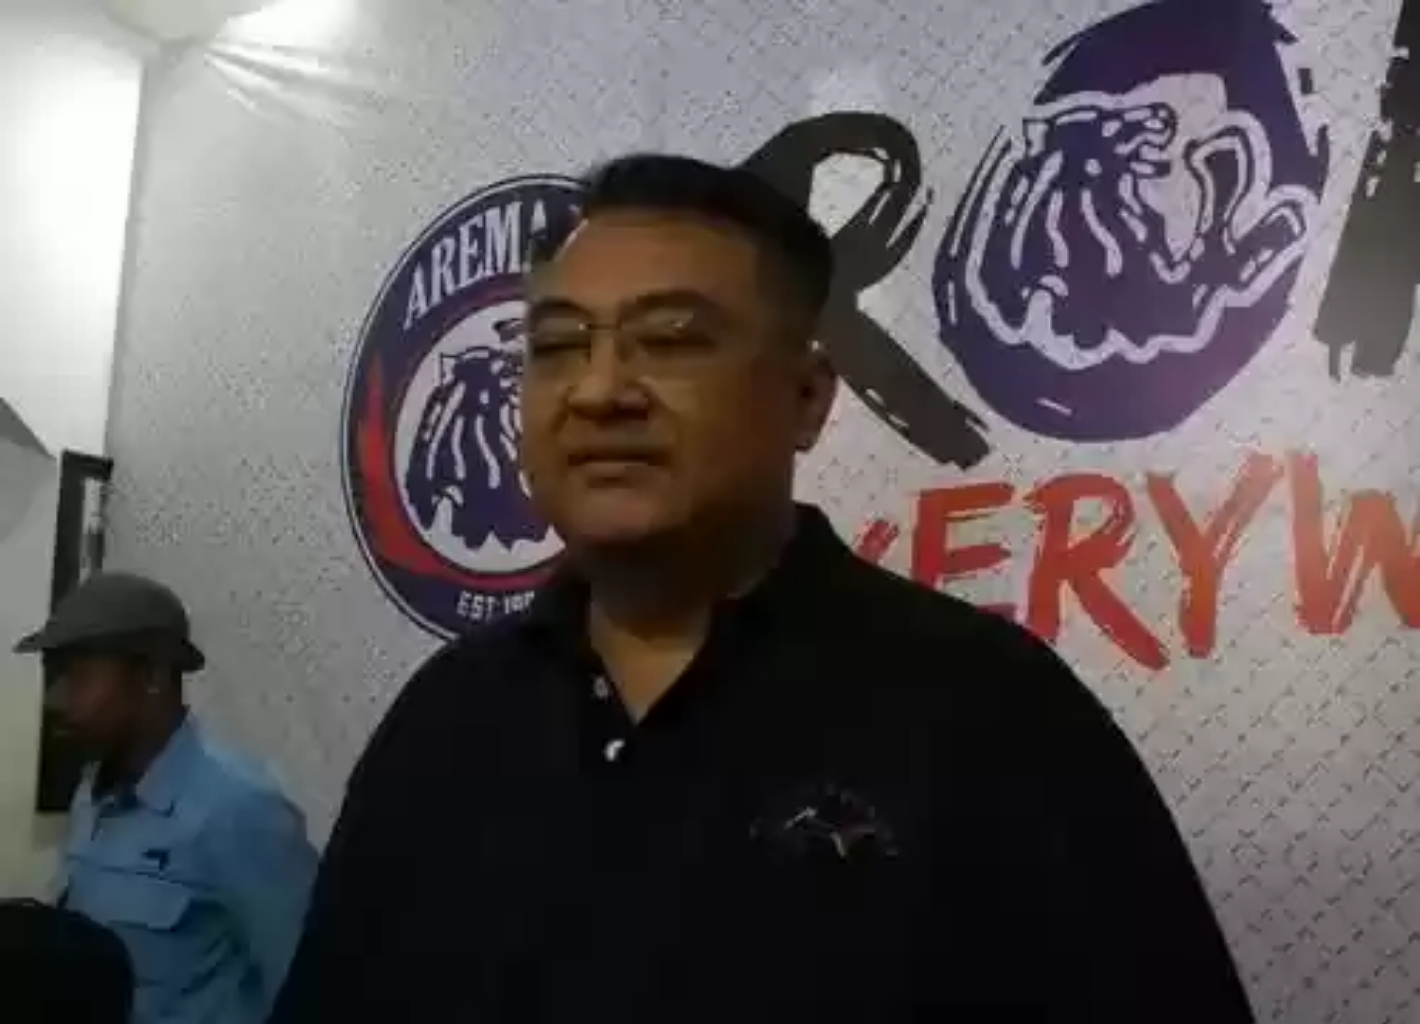 Trik Manajemen Arema FC Lakukan Penghematan saat Pandemi Virus Corona